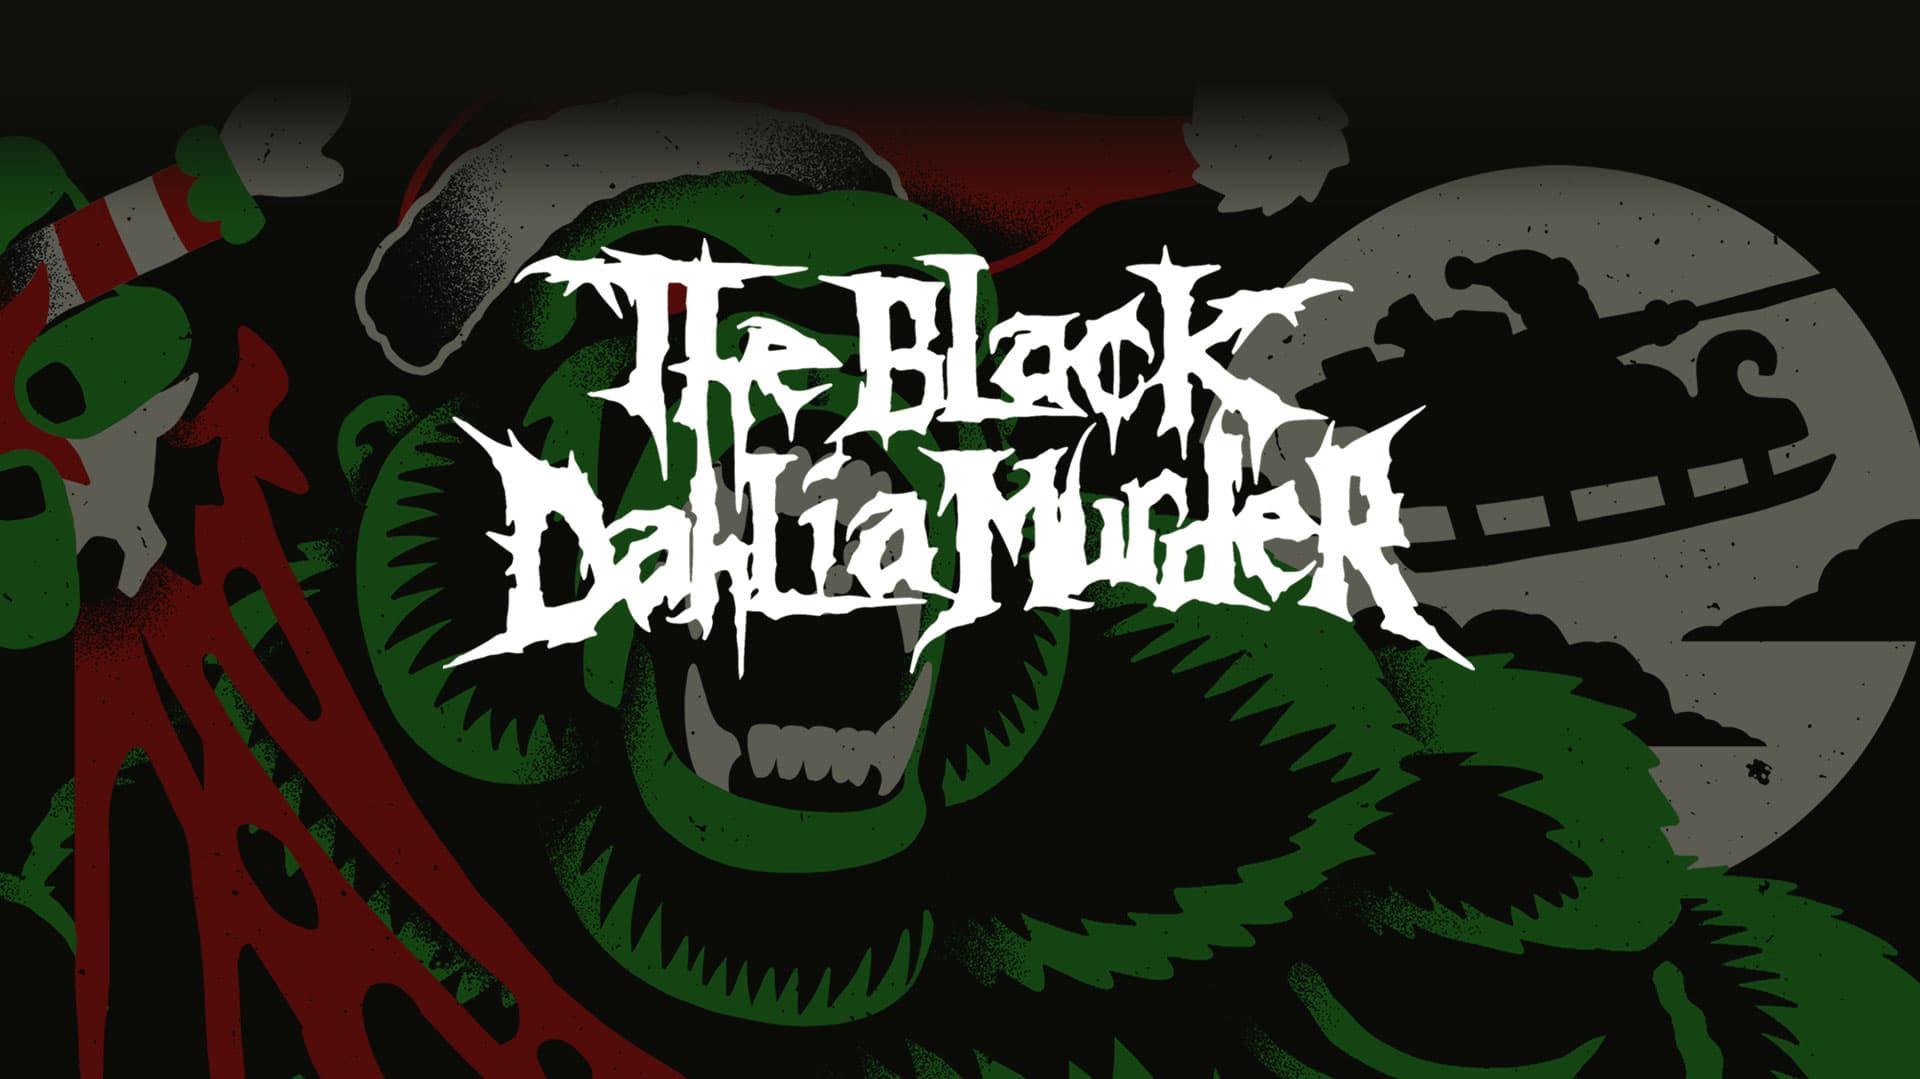 The Black Dahlia Murder: Yule em All! backdrop